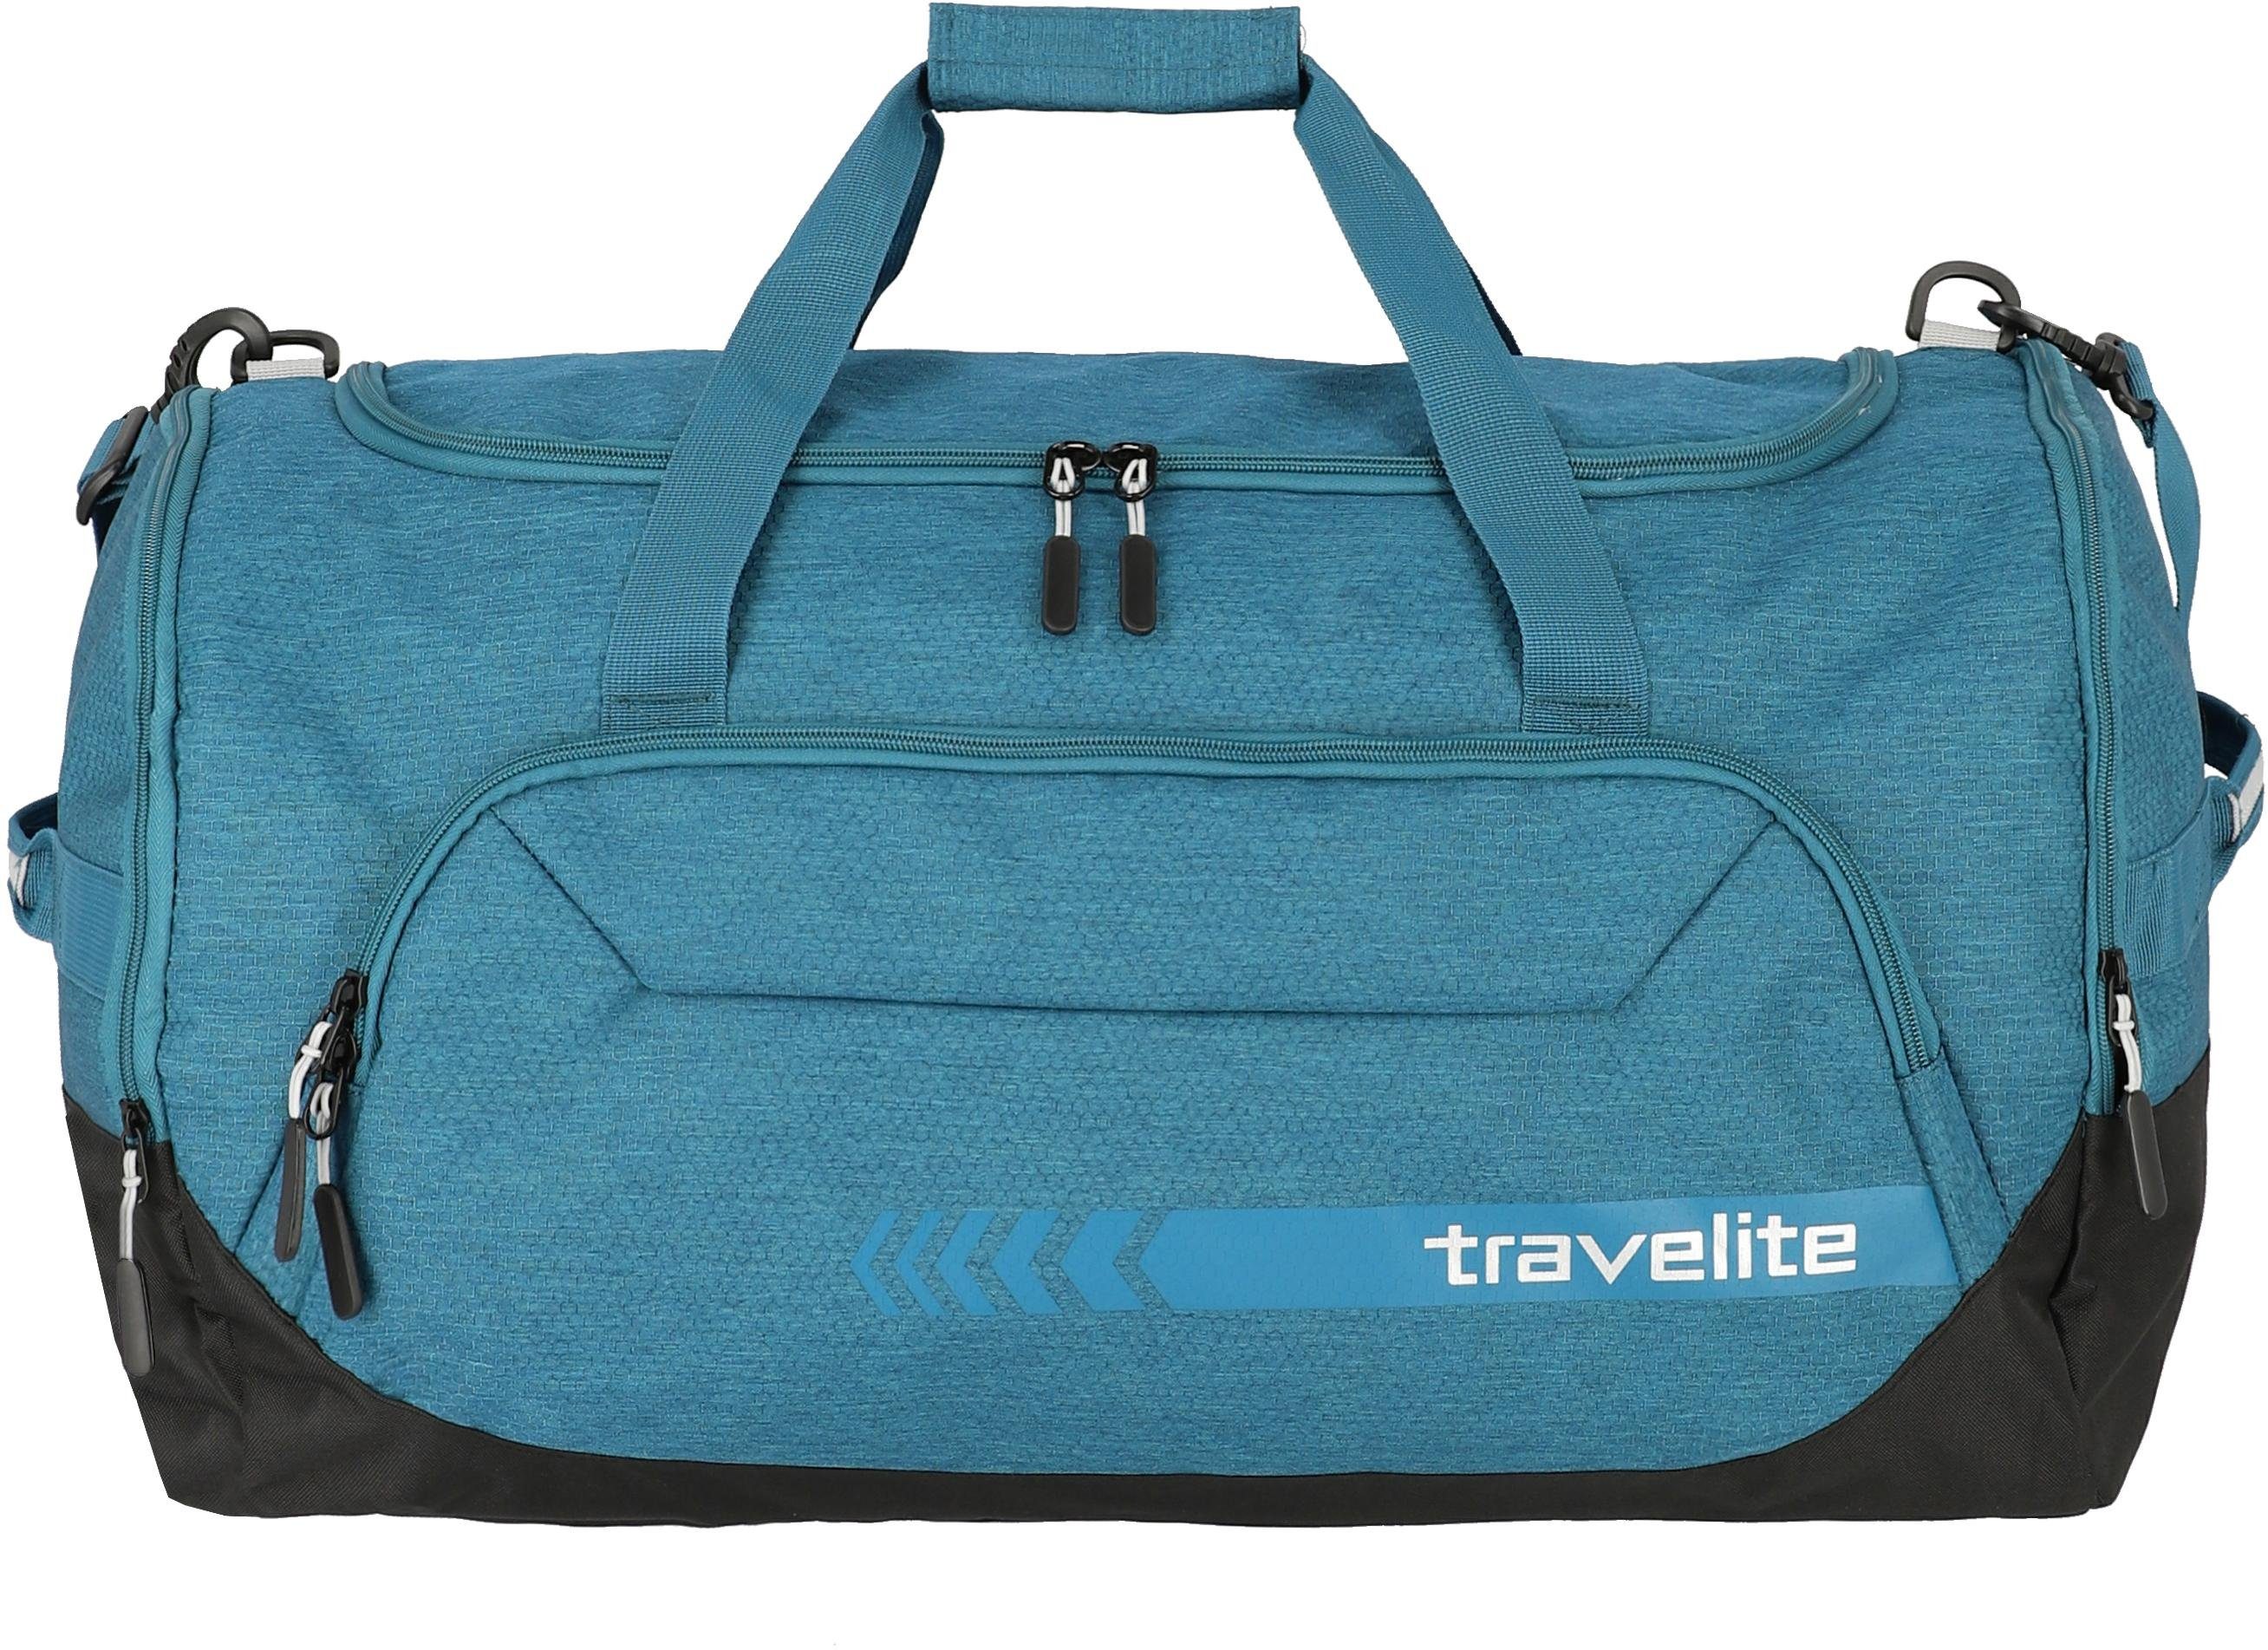 travelite Reisetasche »Kick Off L, 60 cm« kaufen | OTTO